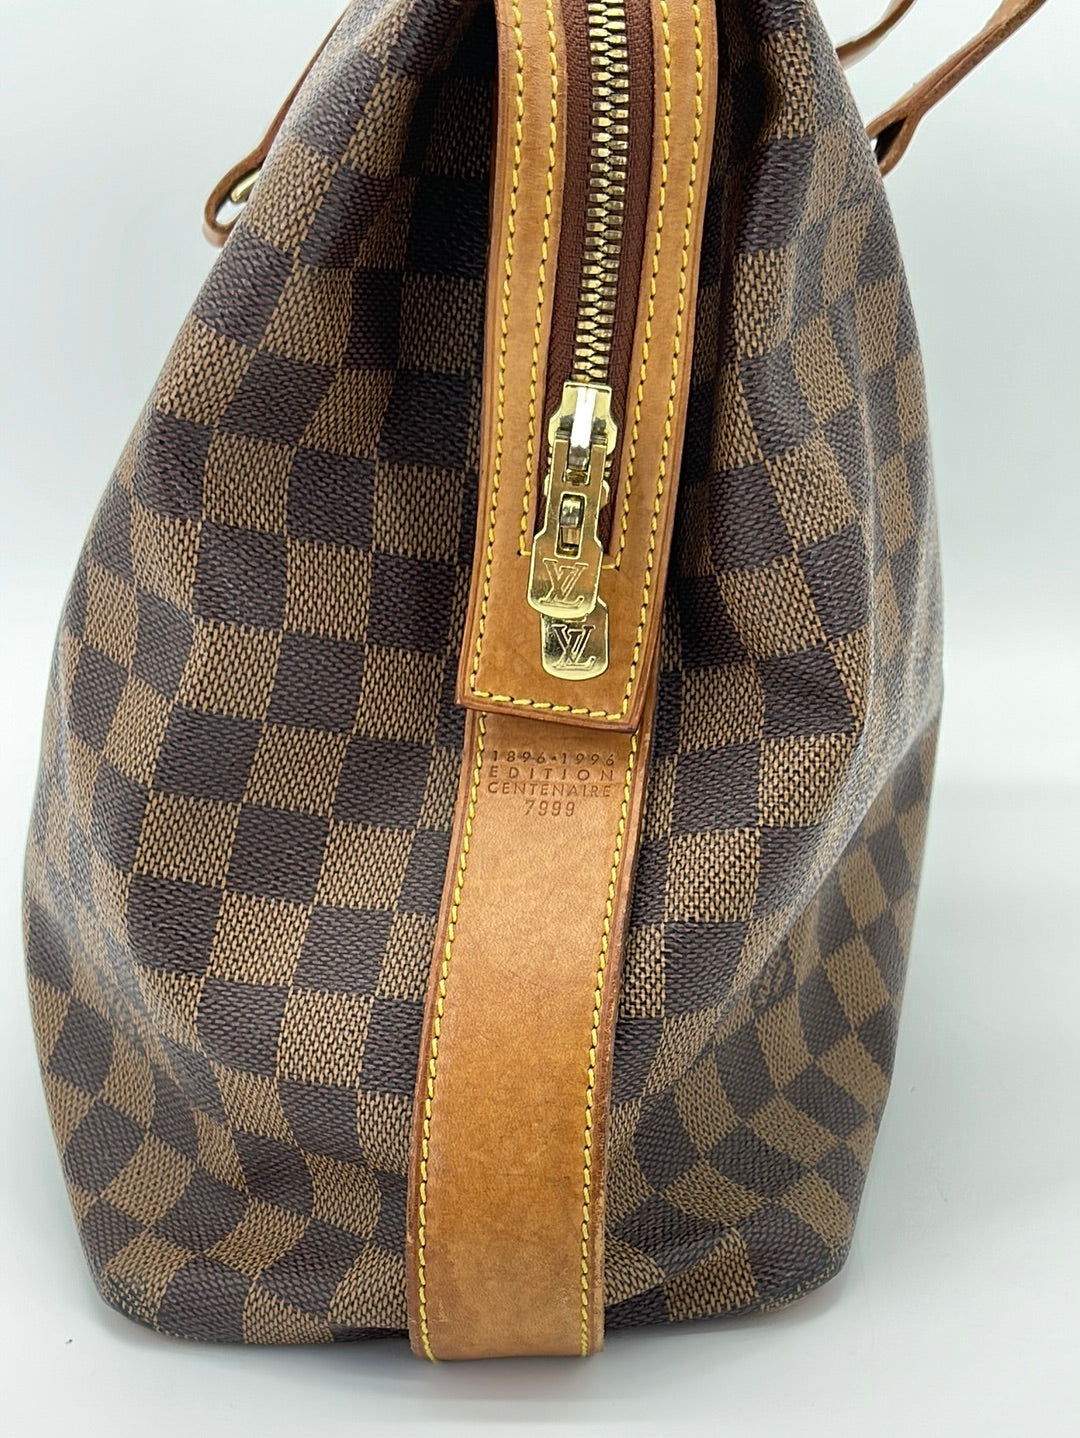 Louis Vuitton, Chelsea Damier Ebene collection vintage bag (1997